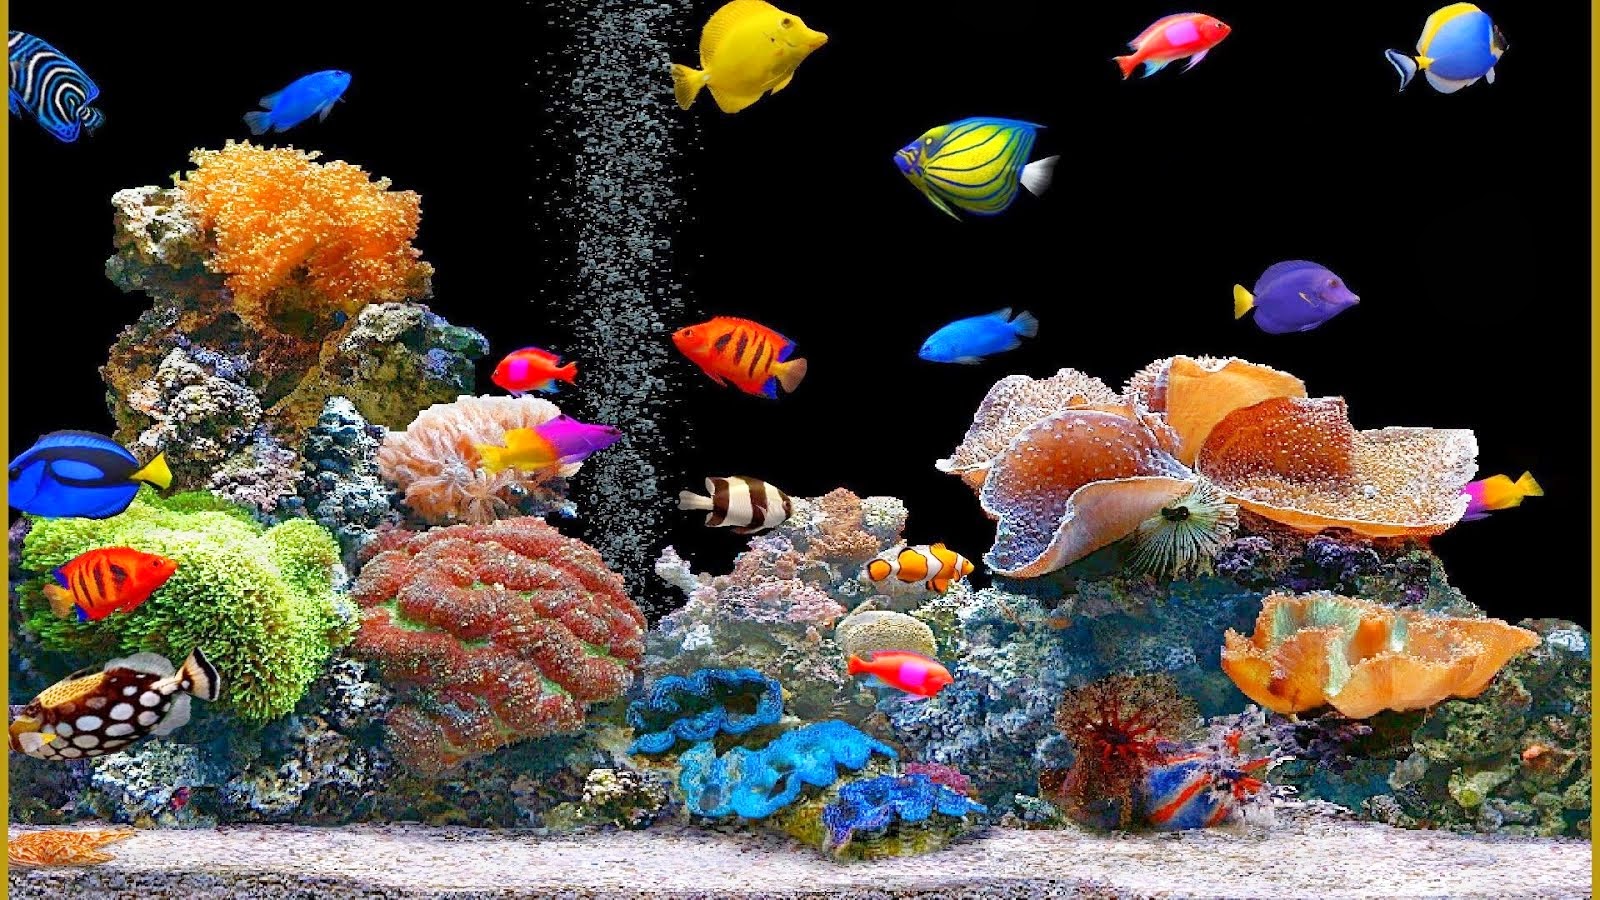 움직이는 물고기 벽지,산호초,암초,해양 생물학,돌이 많은 산호초,수족관